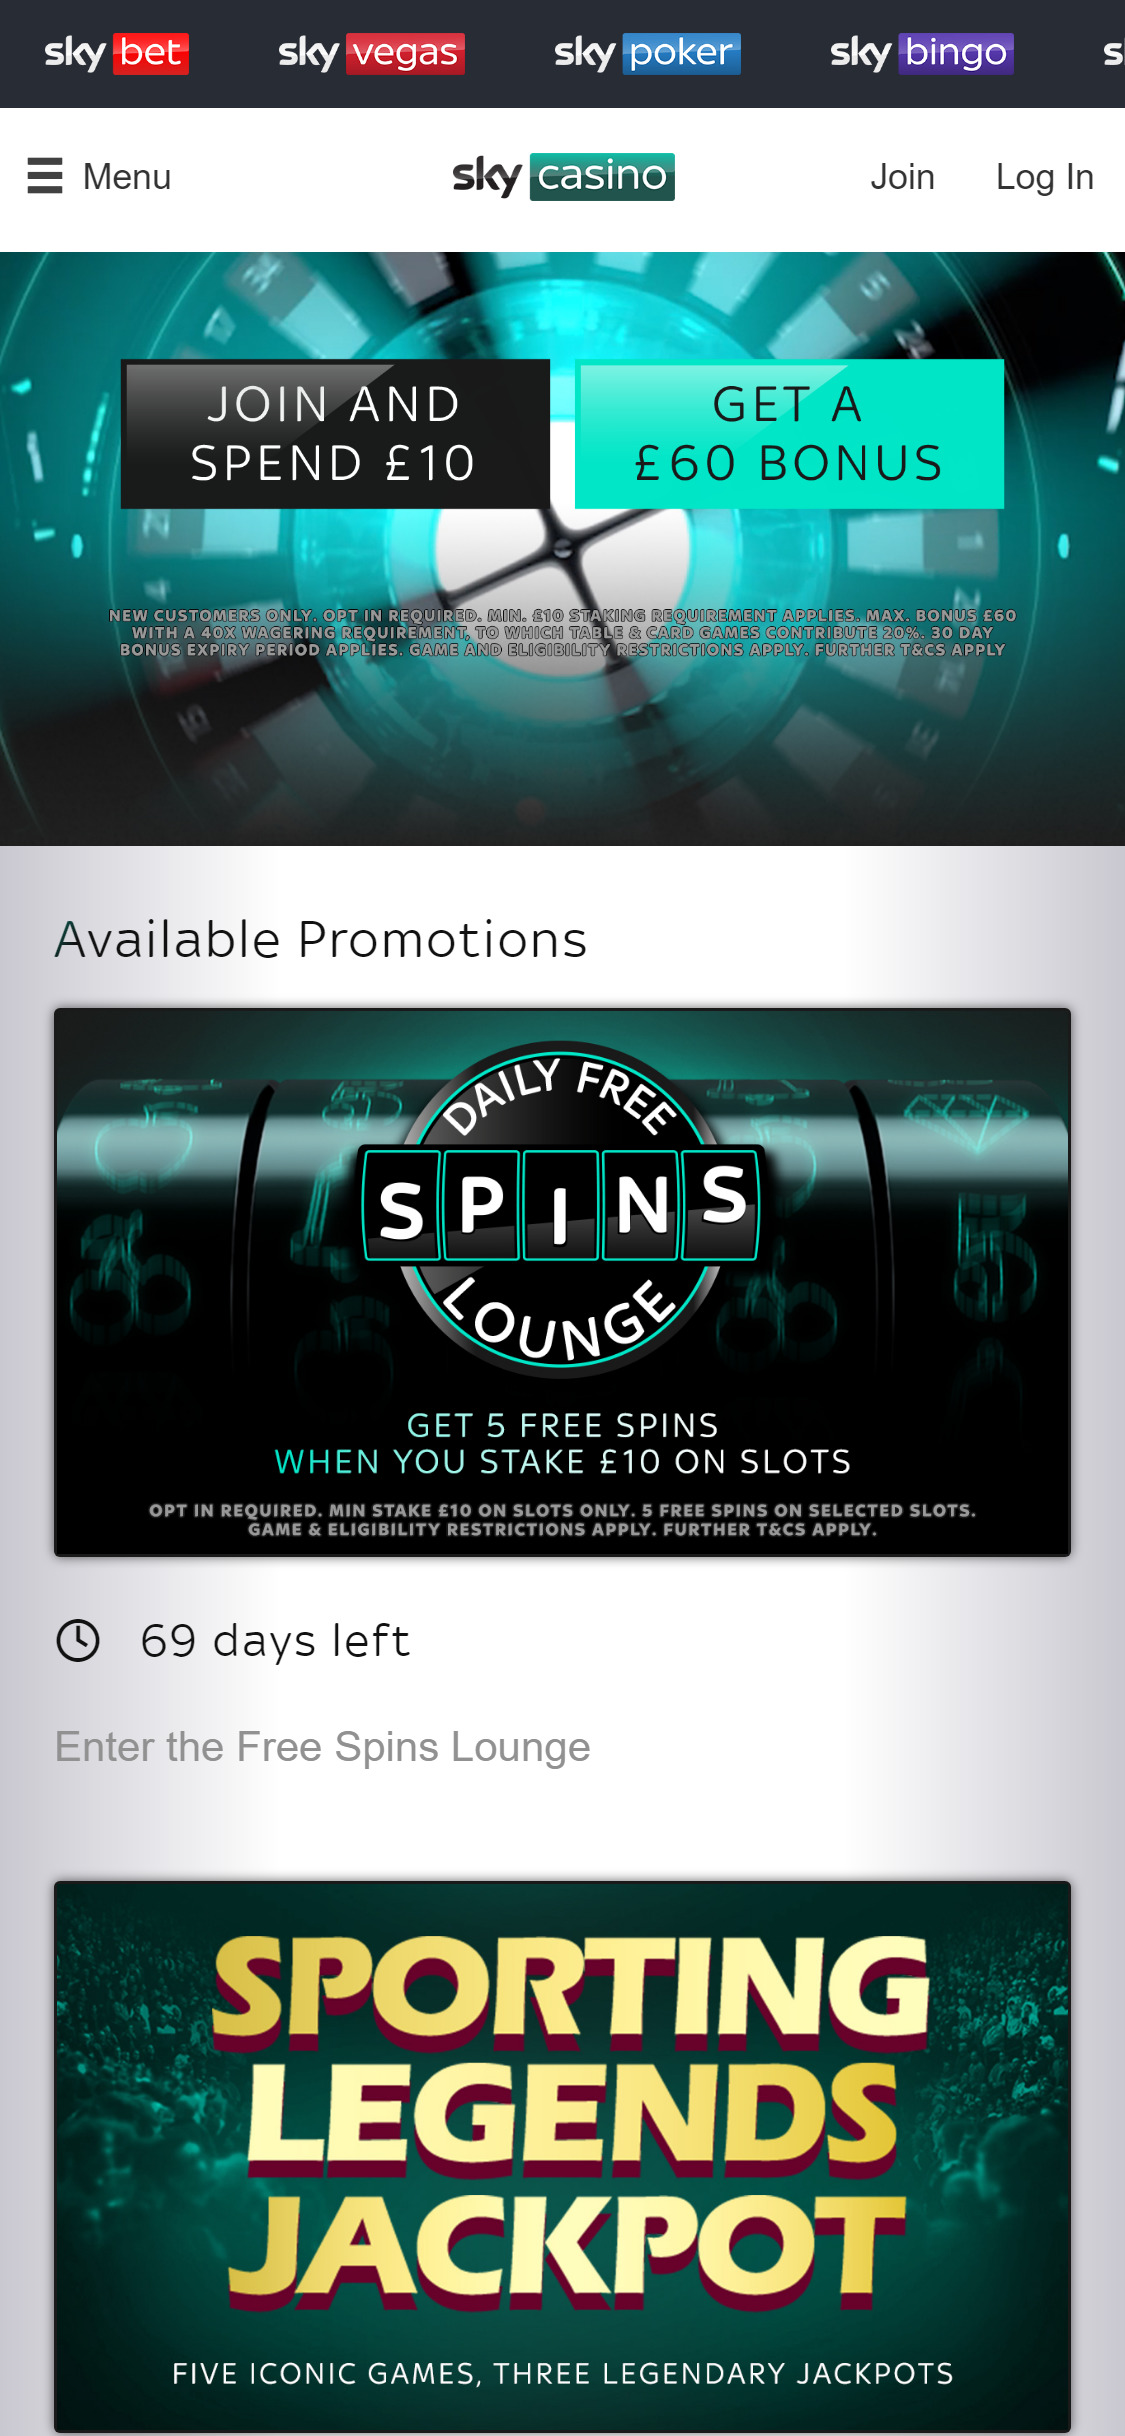 Sky Casino Mobile No Deposit Bonus Review